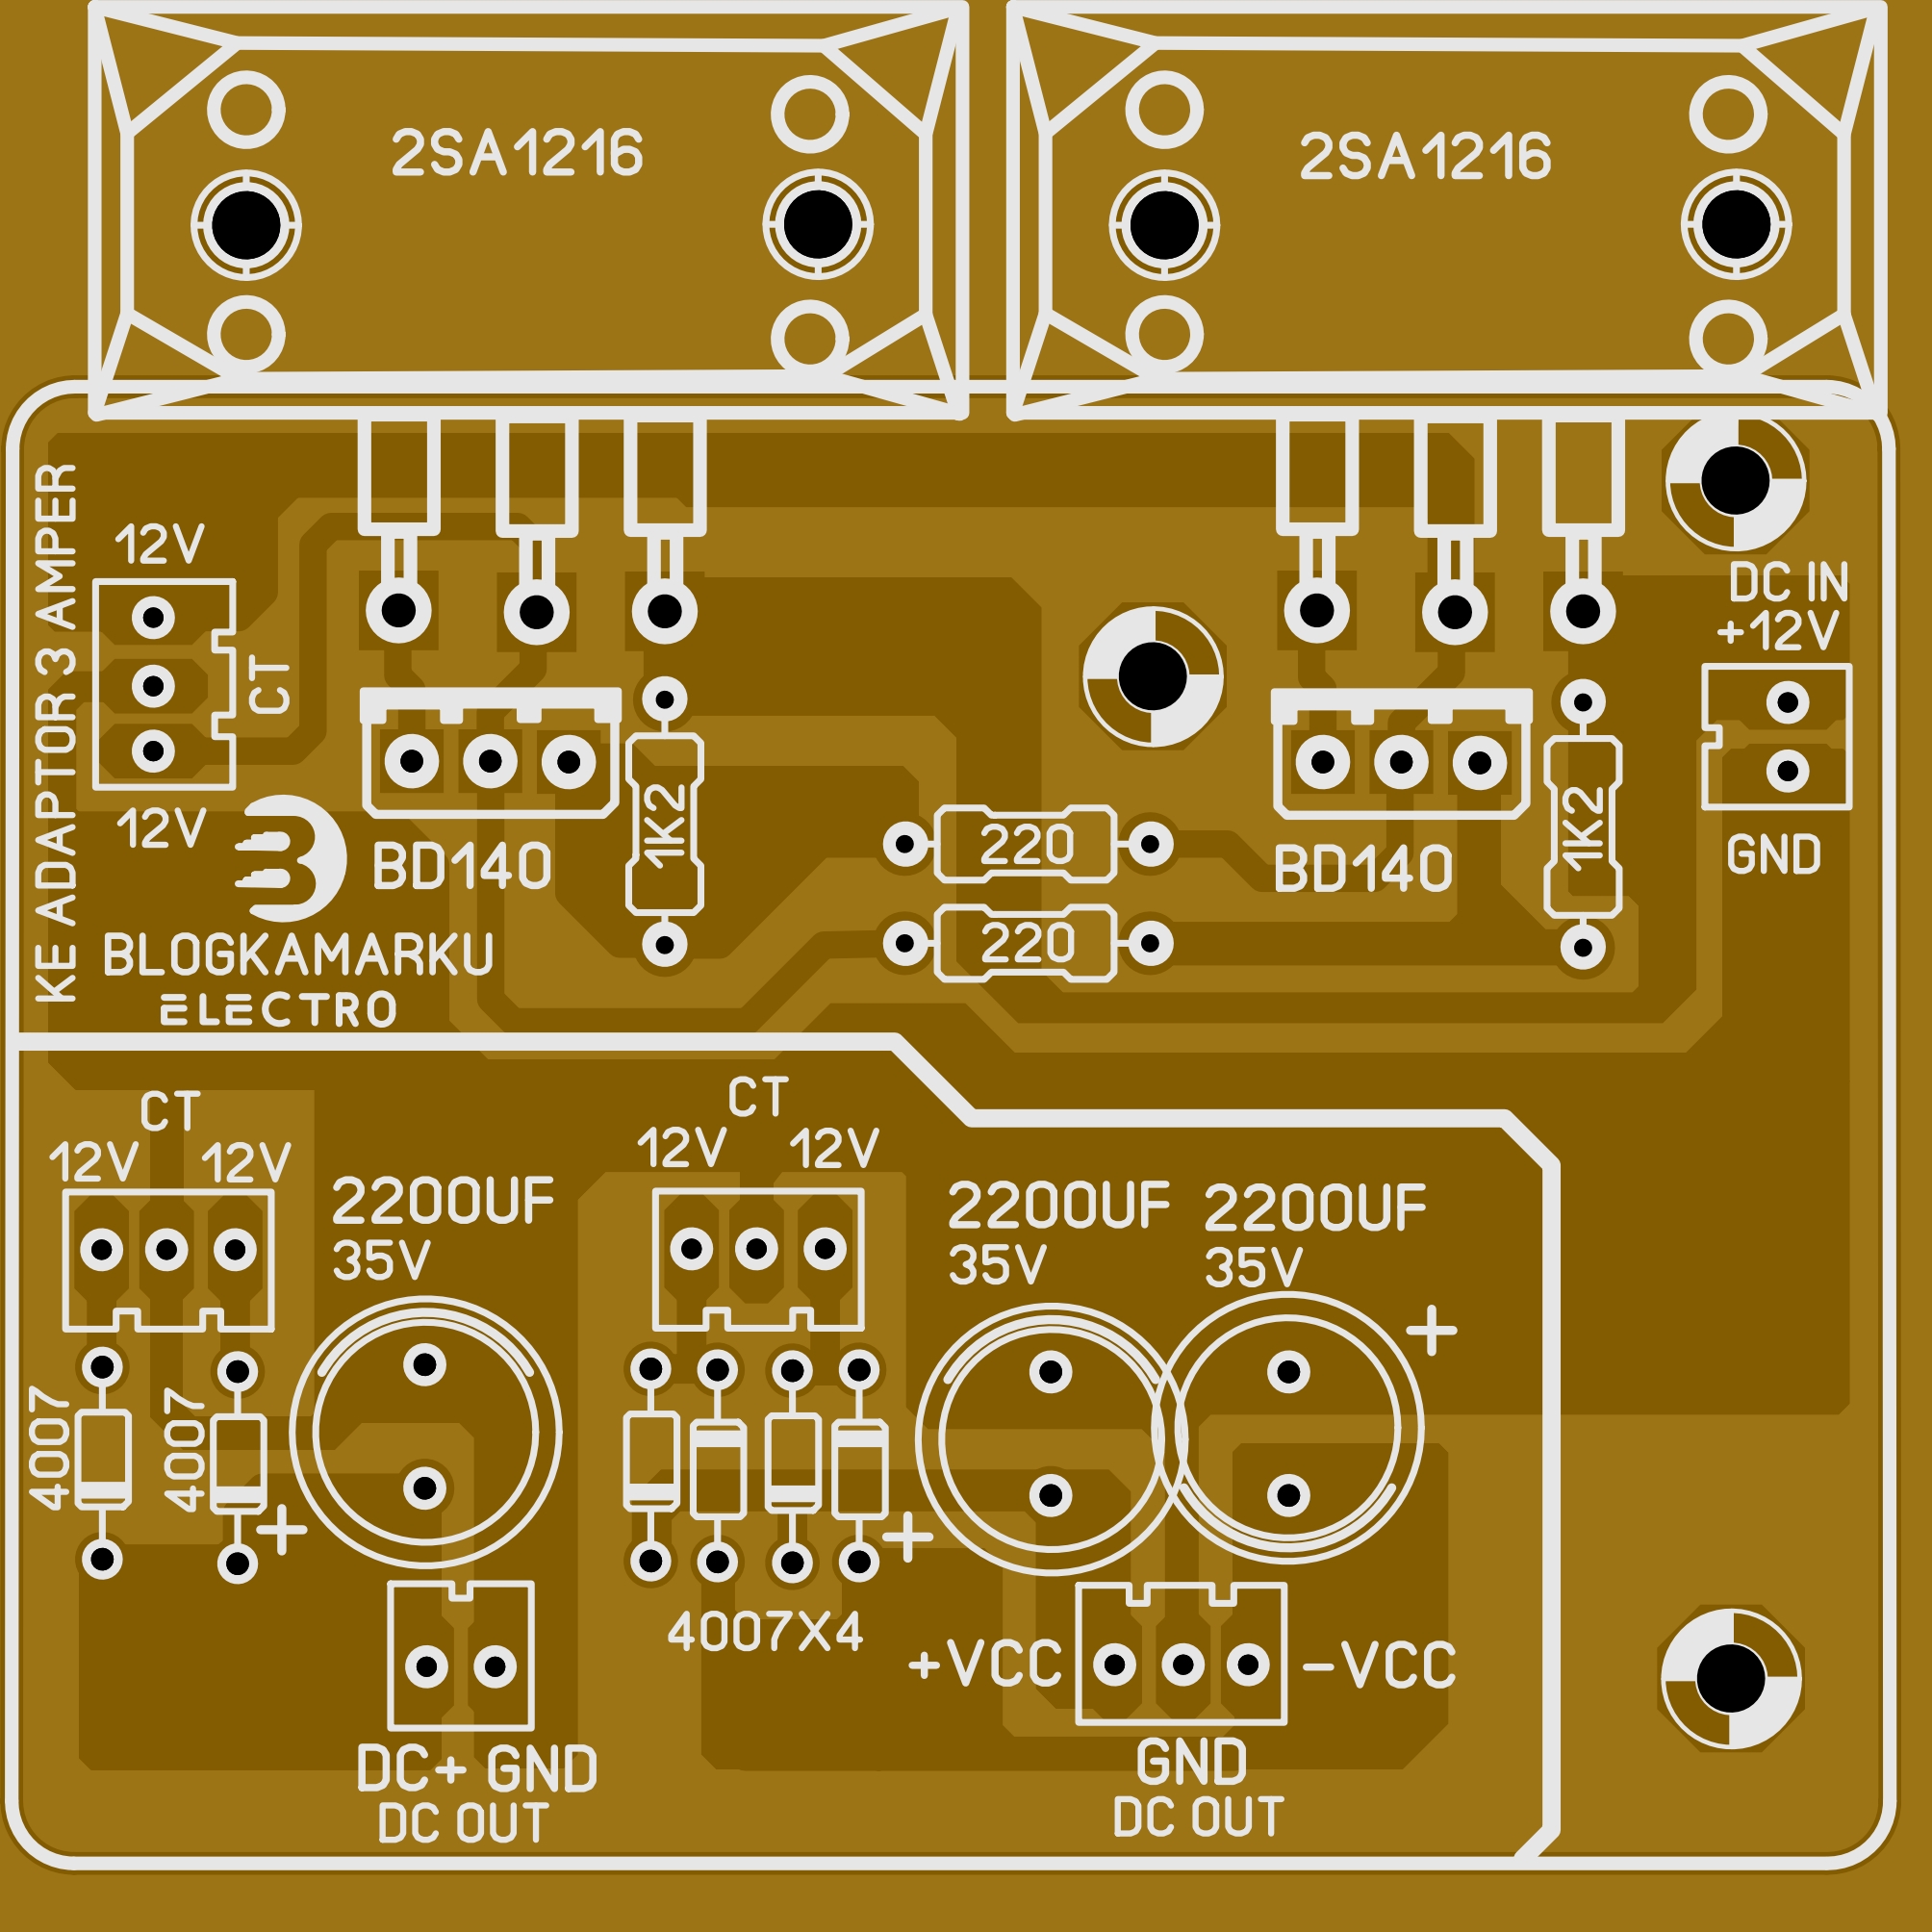 Rangkaian Membuat Inverter Dc To Ac Sederhana Memakai Transistor 2n3055